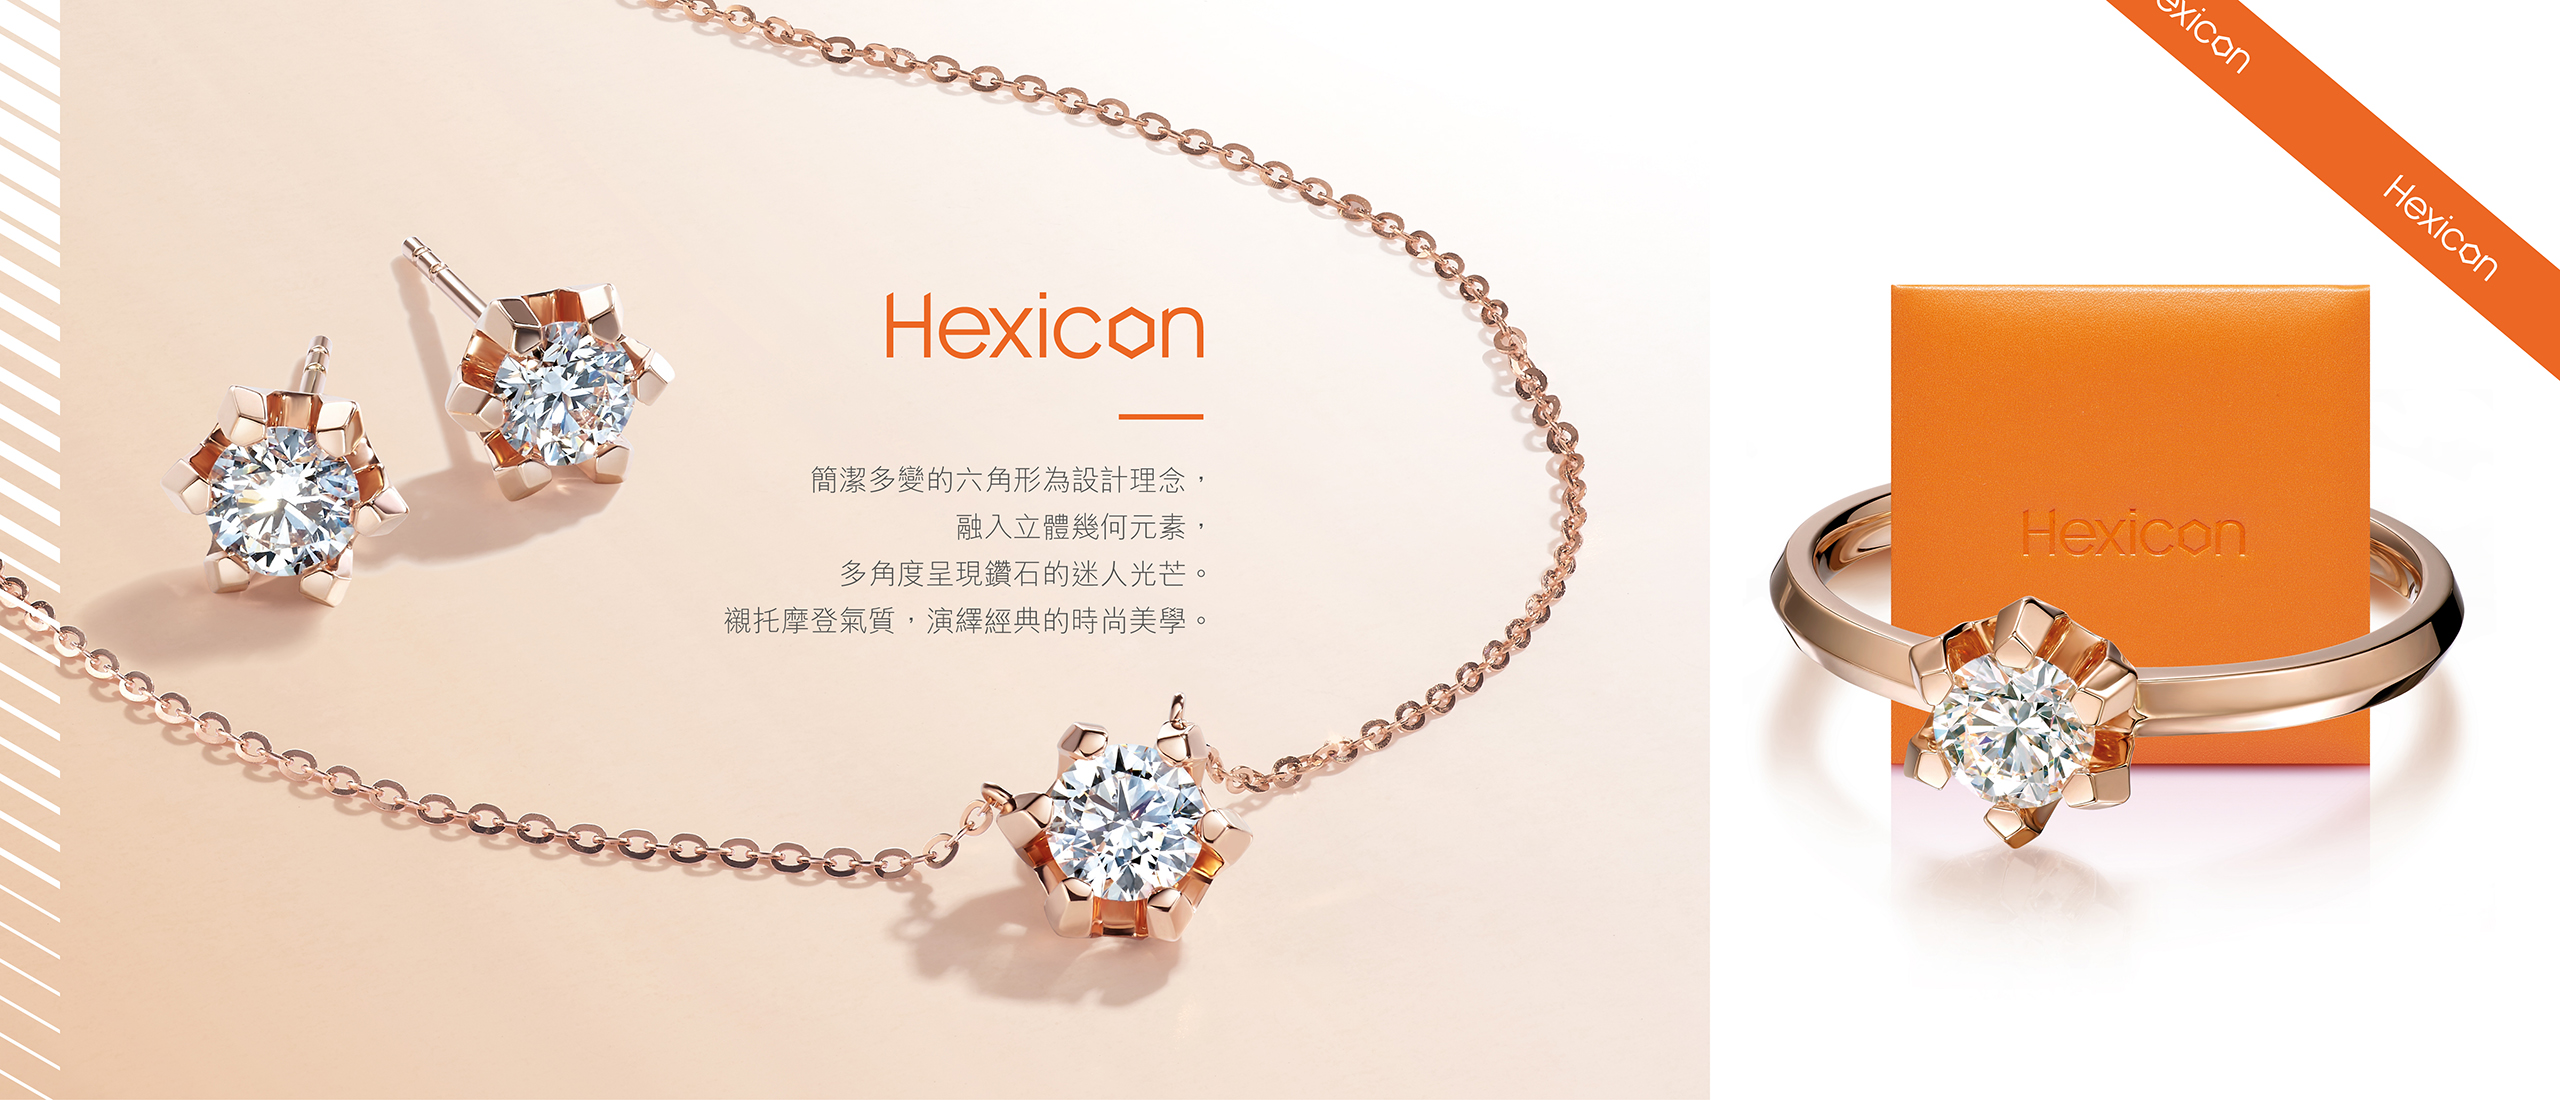 六福珠寶 - Hexicon 系列  Banner